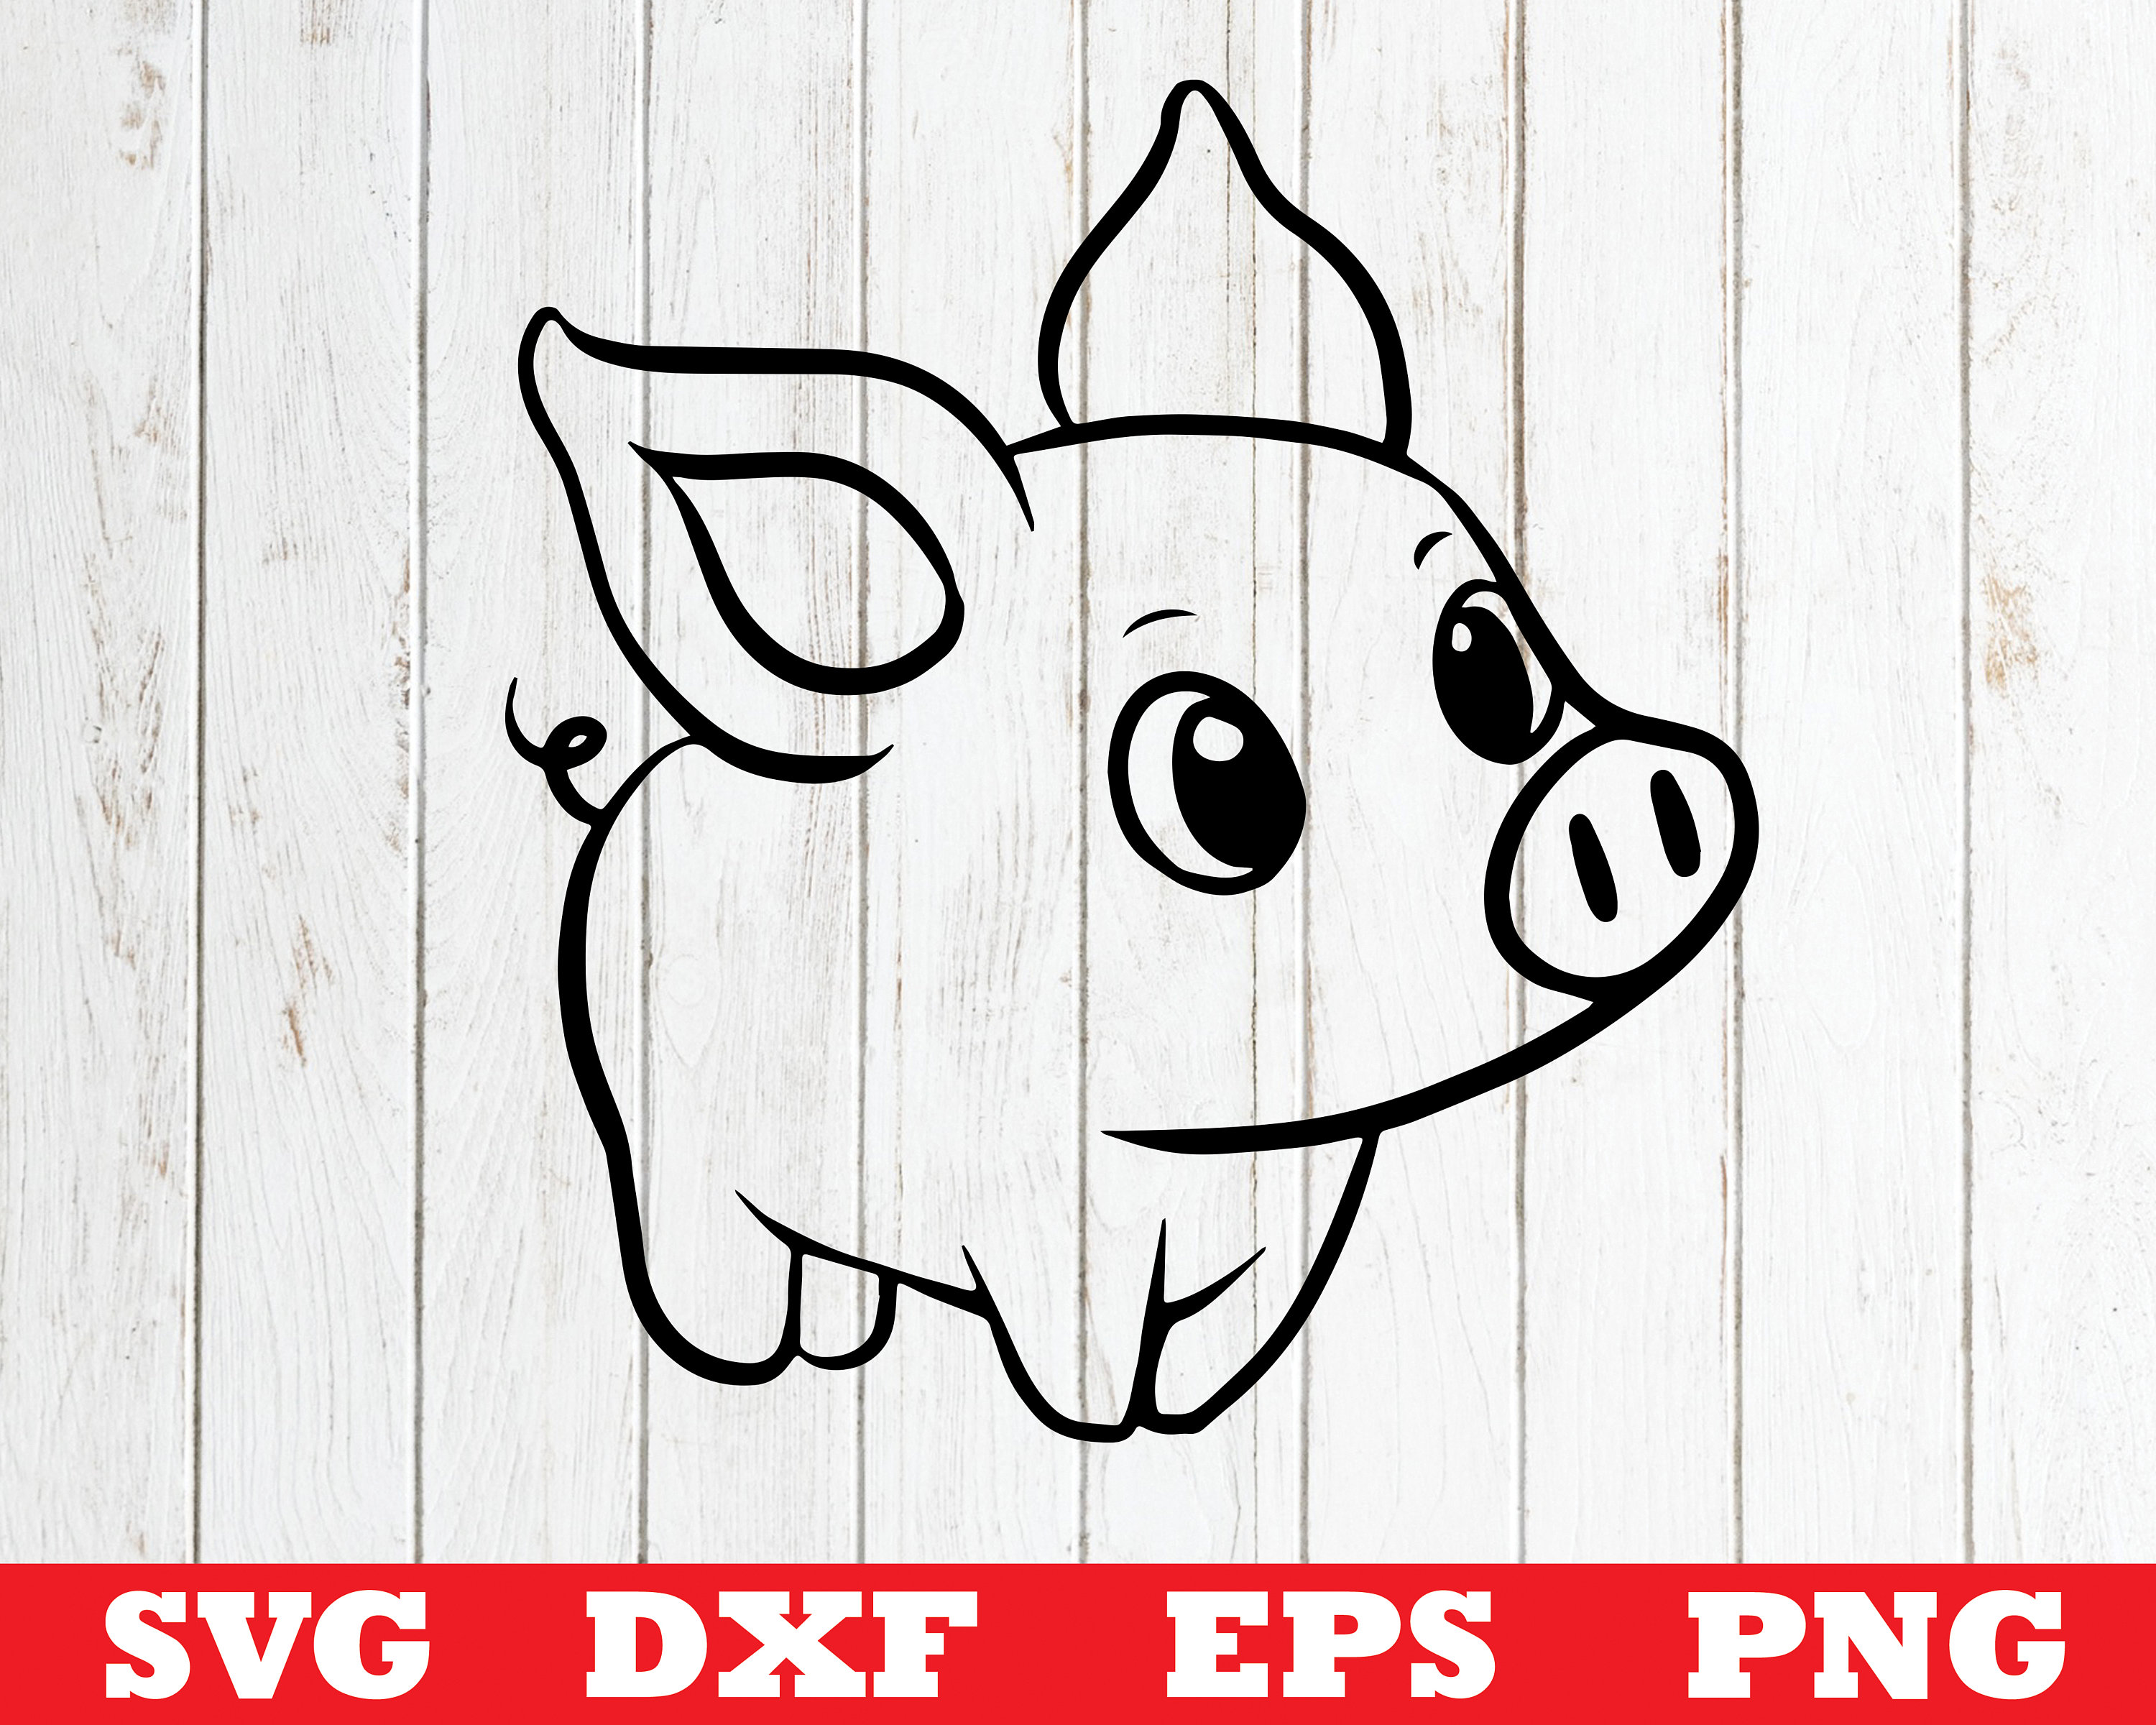 Download Pig SVG Baby pig svg file for cricut pig svg designs pig | Etsy